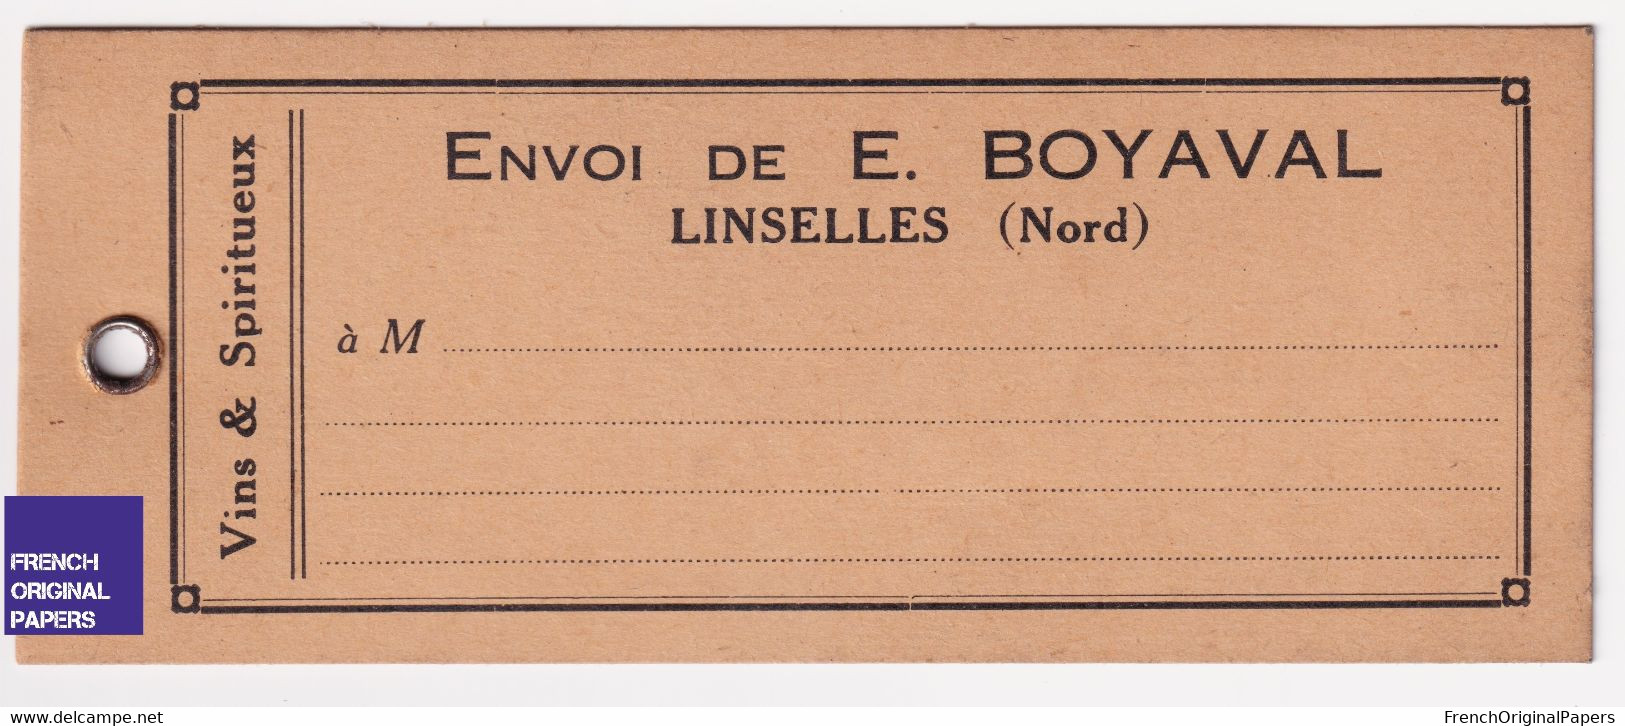 LOT DE 3 - Rare étiquette Livraison - Linselles Nord Vins Et Spiritueux Boyaval 1920s Vin œnologie Commerce  A63-30 - Publicités